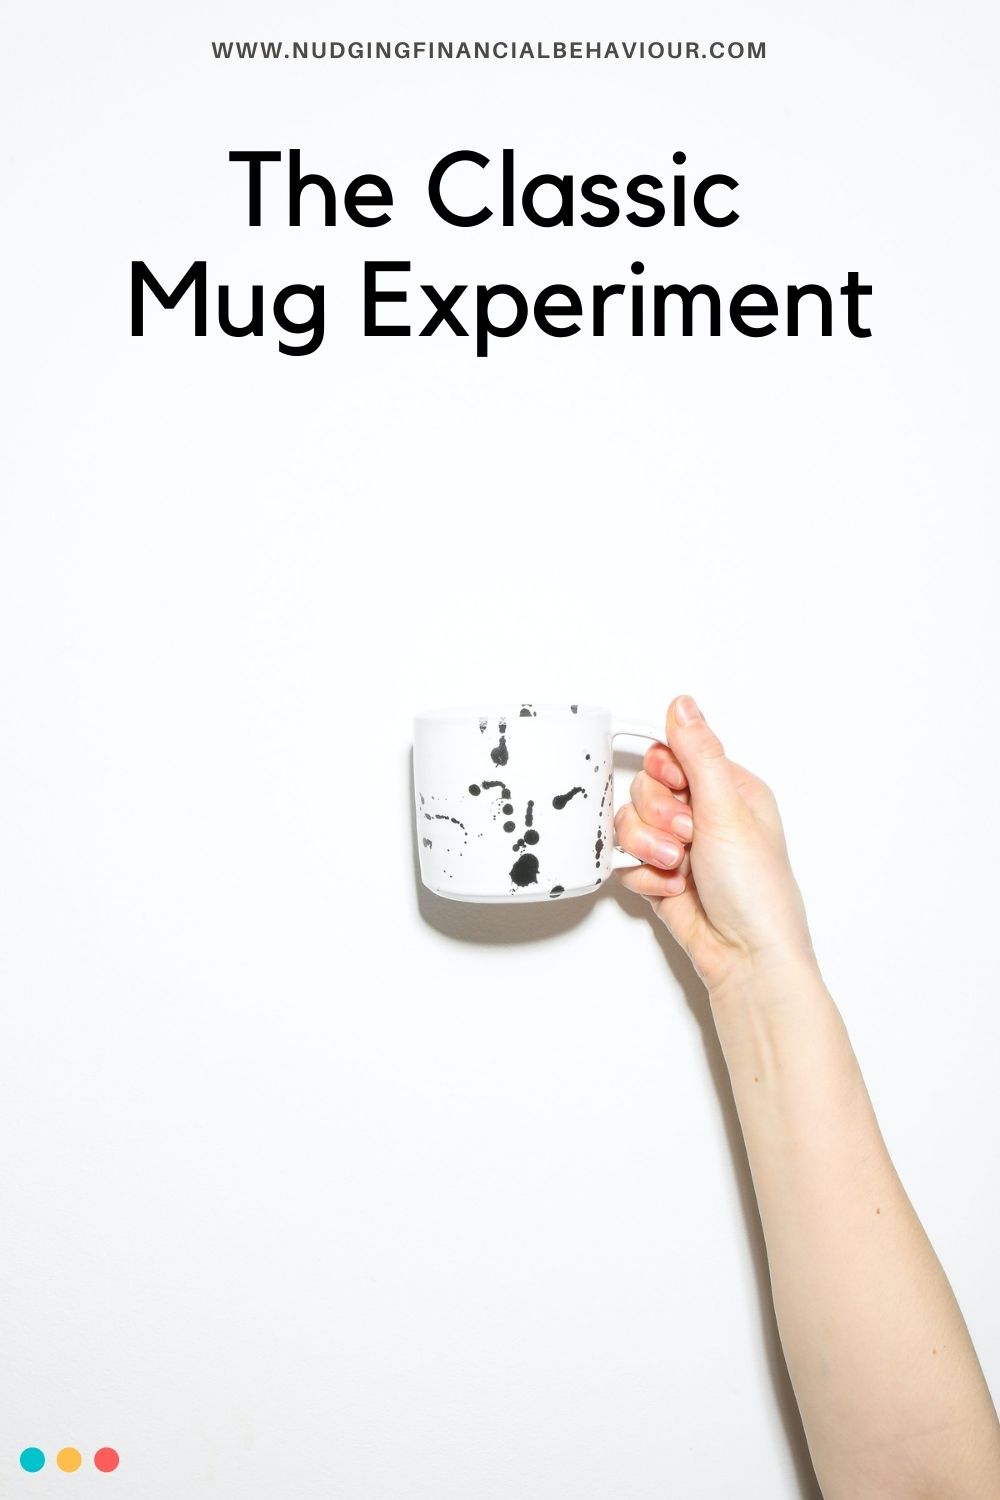 Mug experiment